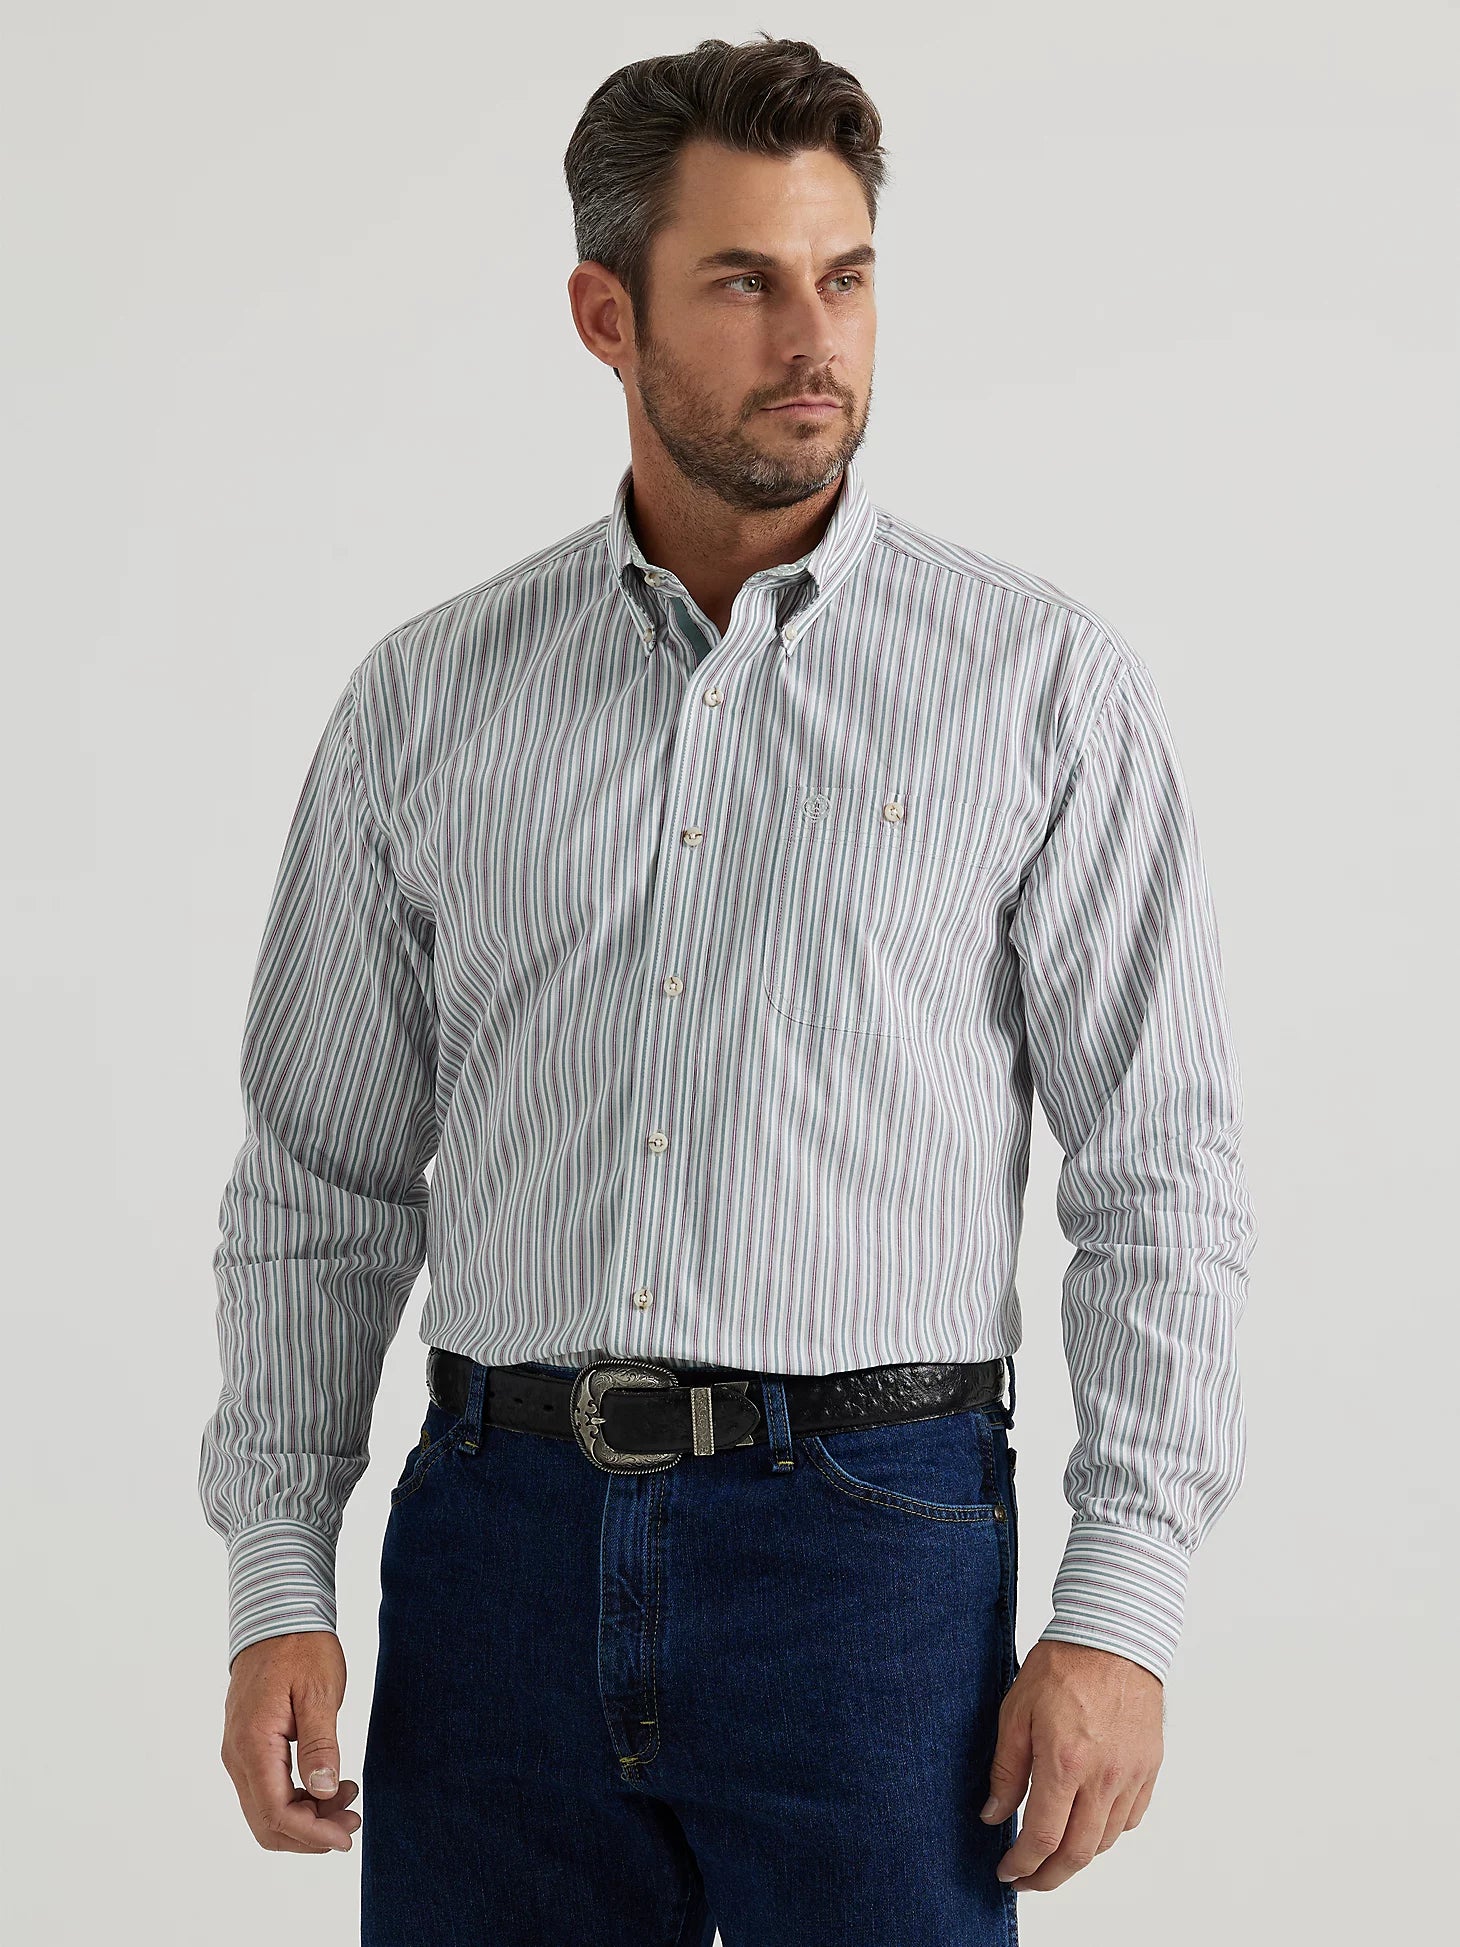 Wrangler Men's George Strait Long Sleeve Shirt STYLE 112346529